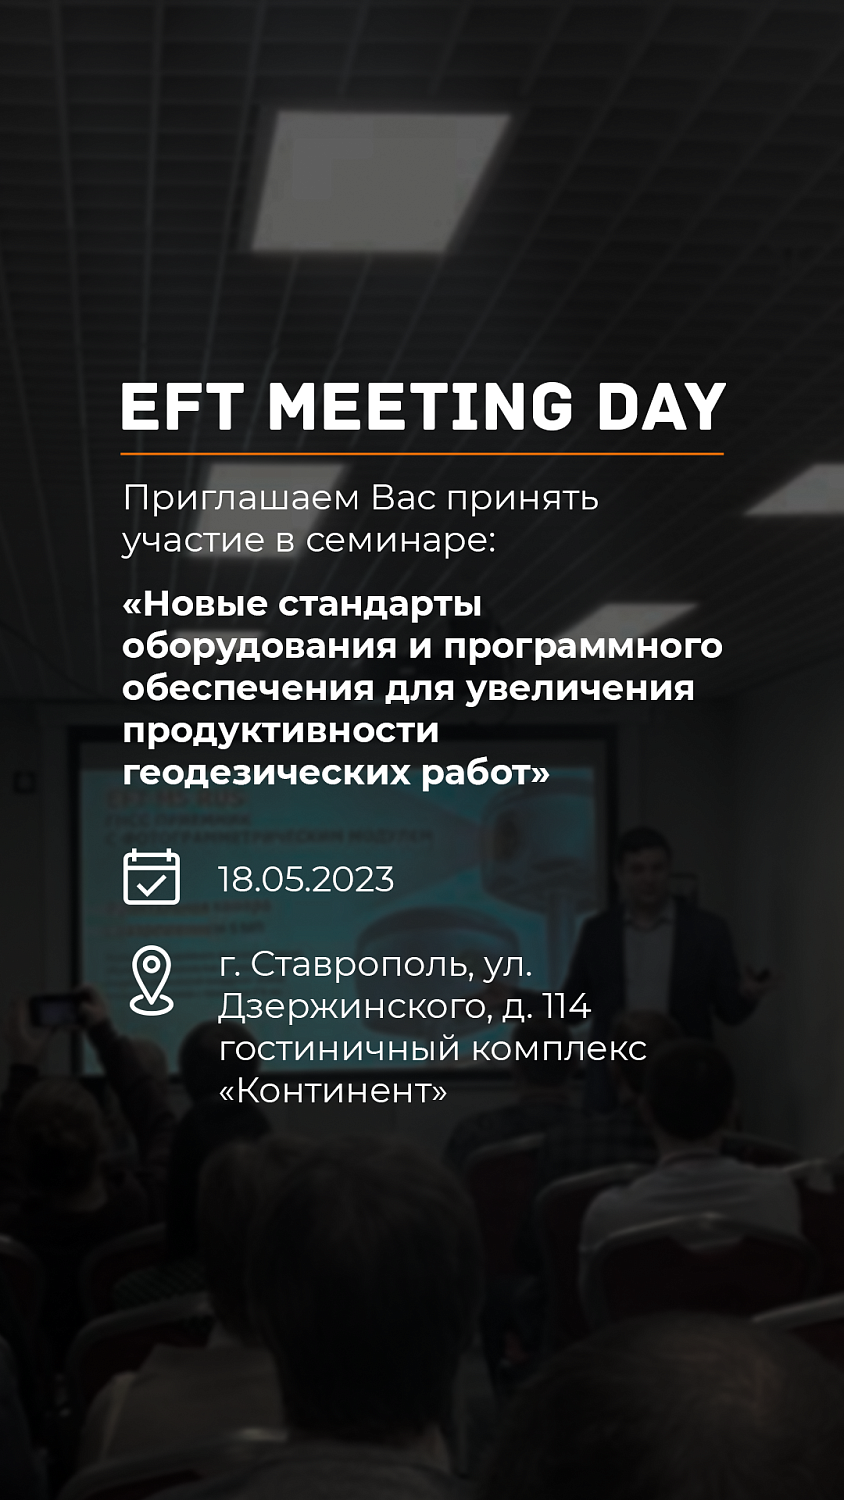 EFT MEETING DAY Ставрополь